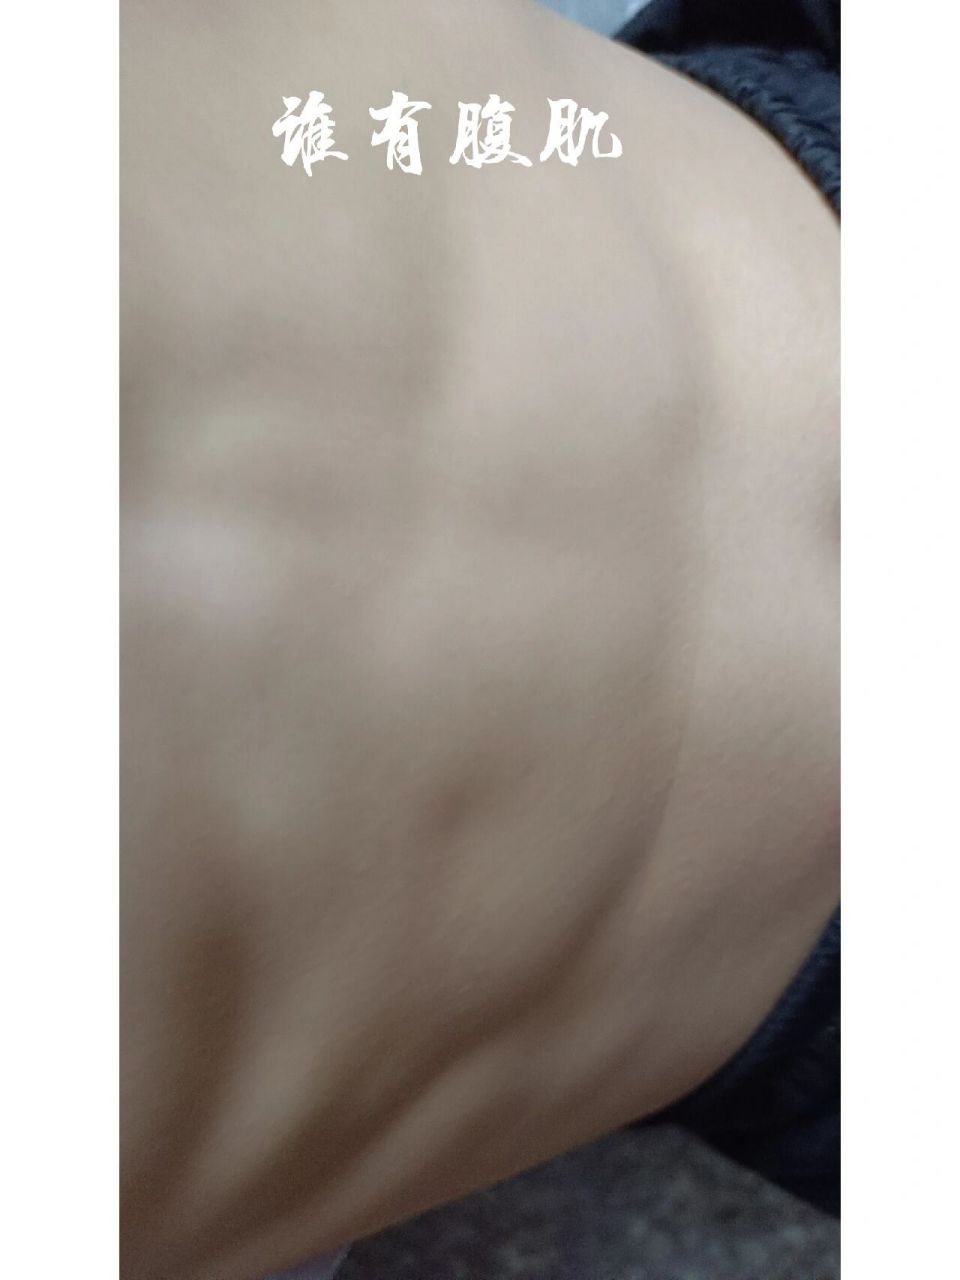 12岁腹肌照片图片